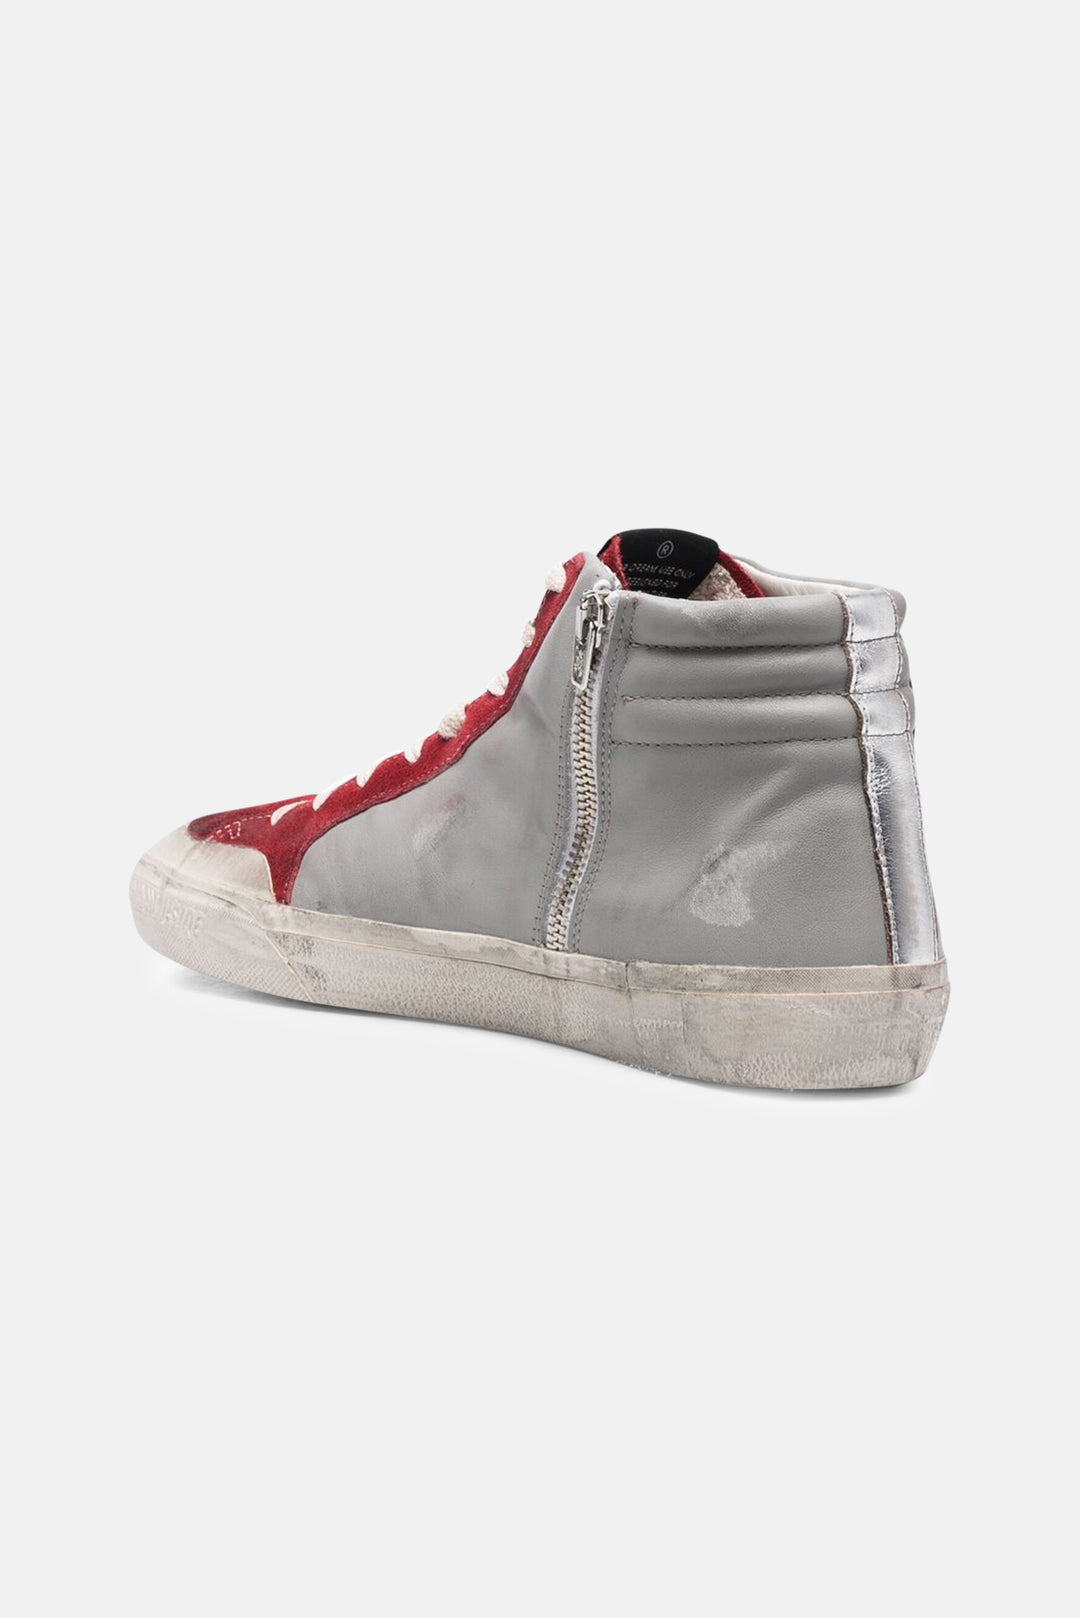 Men's Slide Sneakers Grey/Dark Red - blueandcream